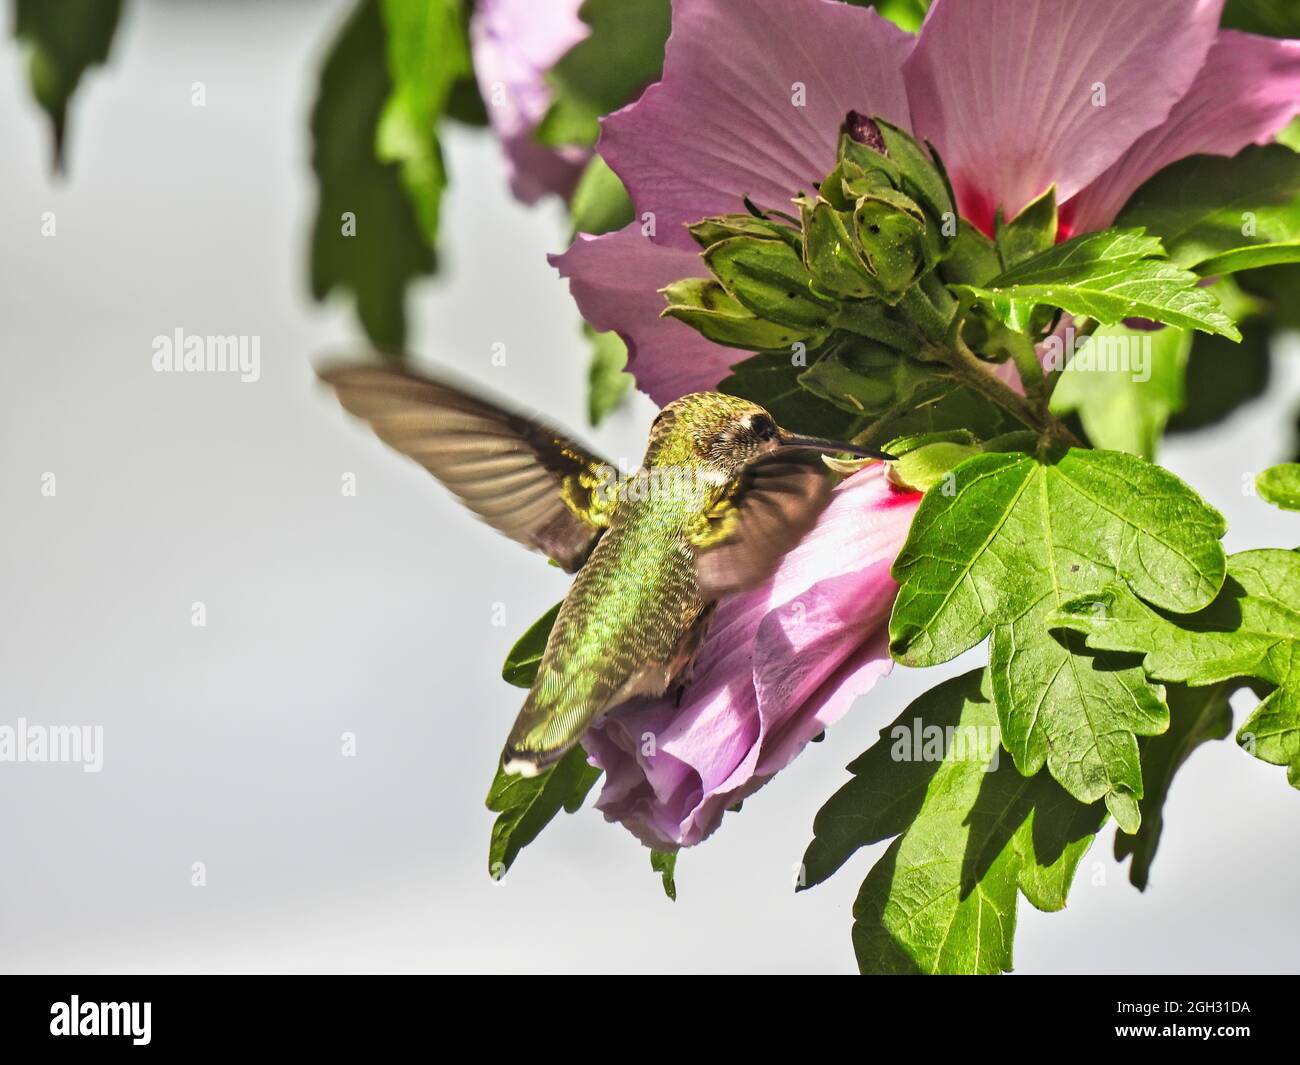 Hummingbird e Flower: Il colibrì con gola rubino si nutre di nettare da un fiore di ibisco mentre è in volo in una luminosa giornata estiva Foto Stock